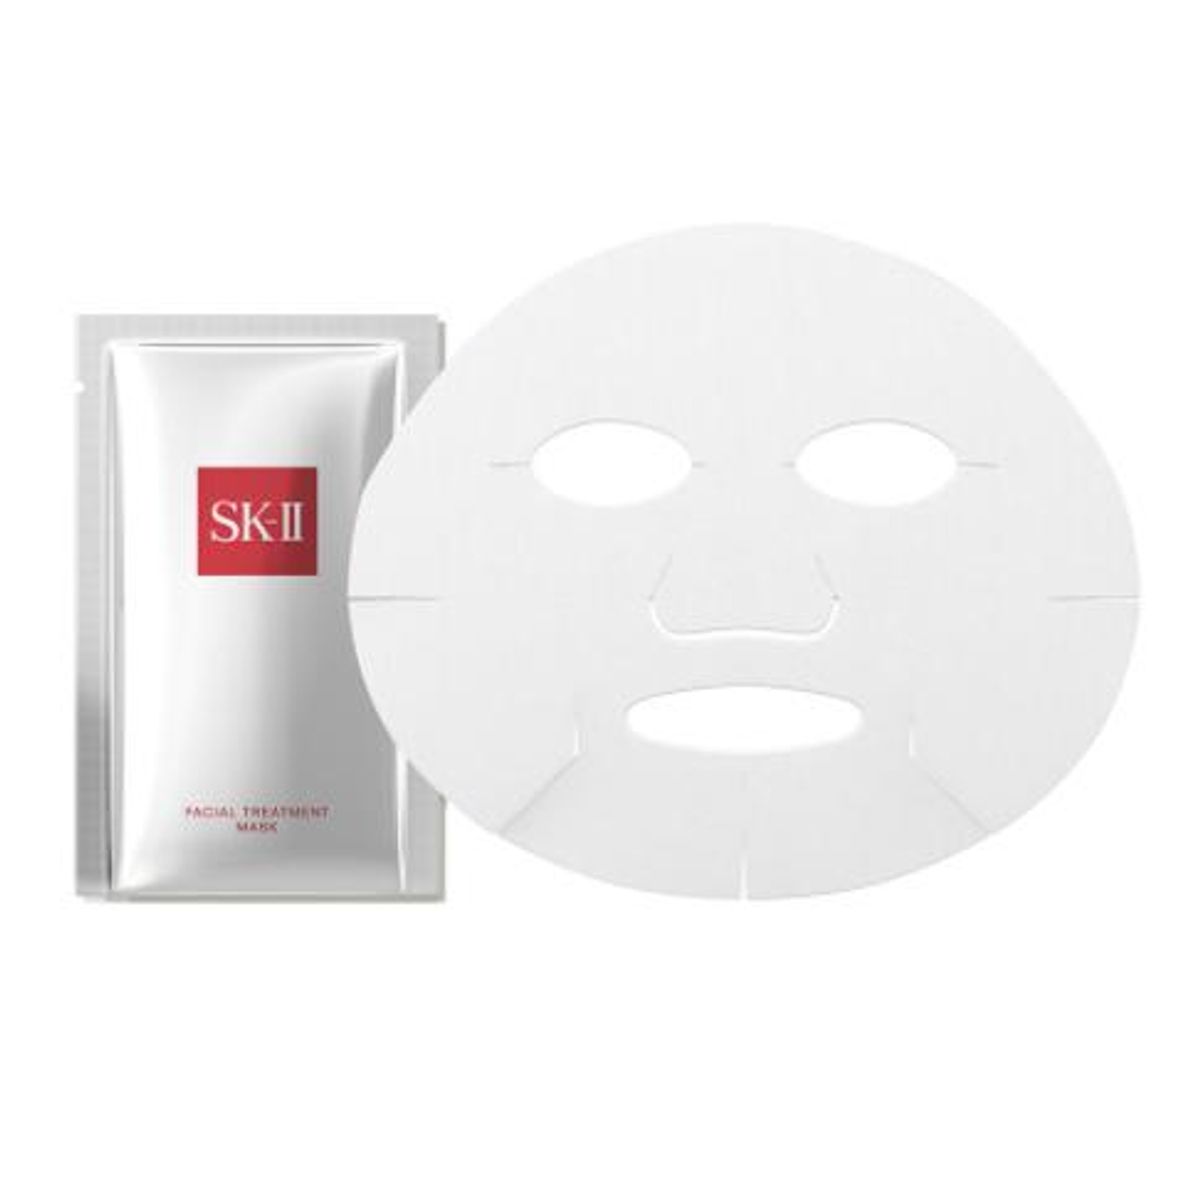 sk ii facial treatment mask